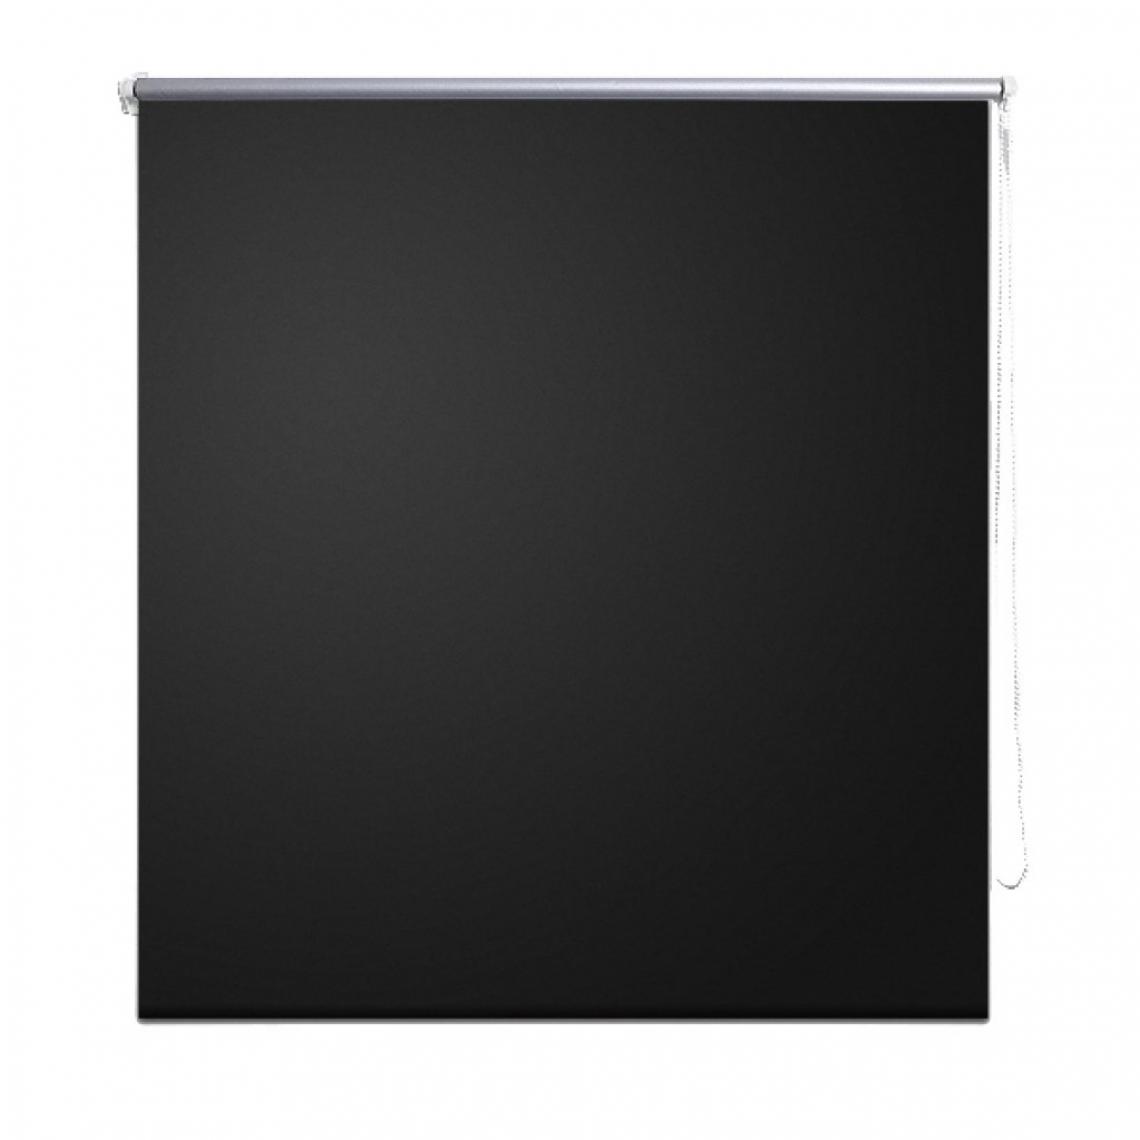 Helloshop26 - Store enrouleur noir occultant 160 x 175 cm fenêtre rideau pare-vue volet roulant 4102037 - Store compatible Velux